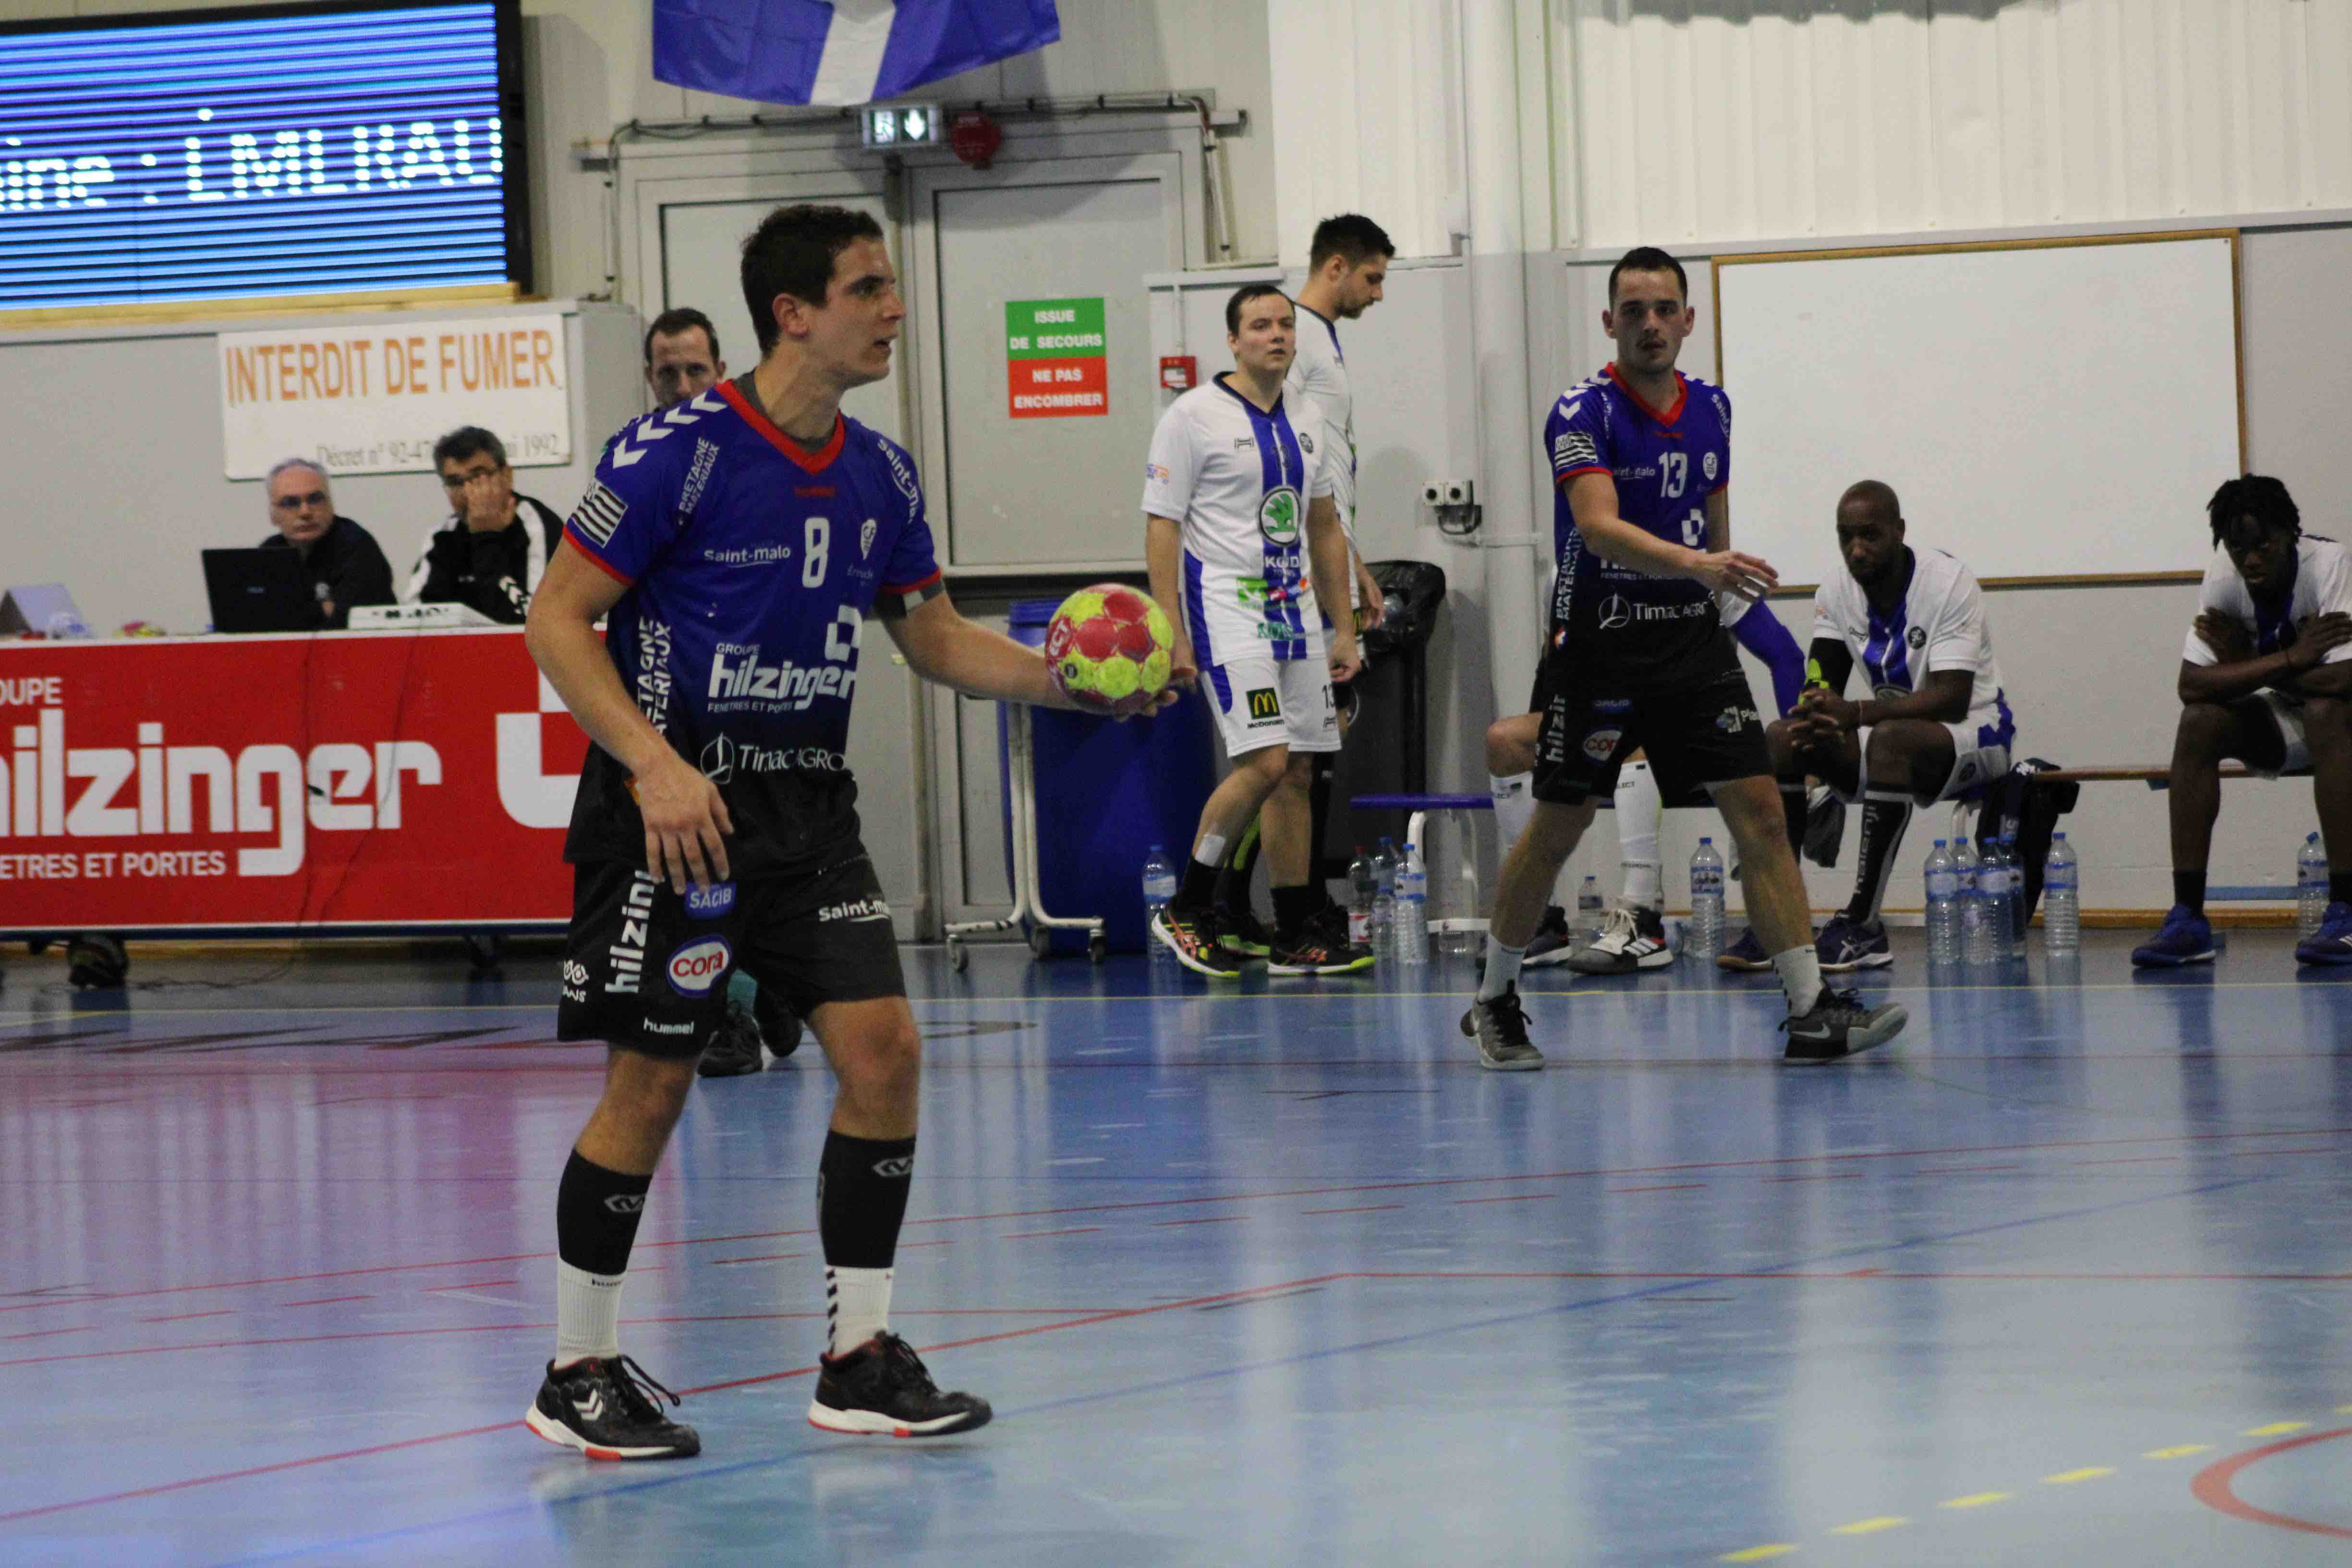 2019nov23 CJF hb _ SC handball (152)